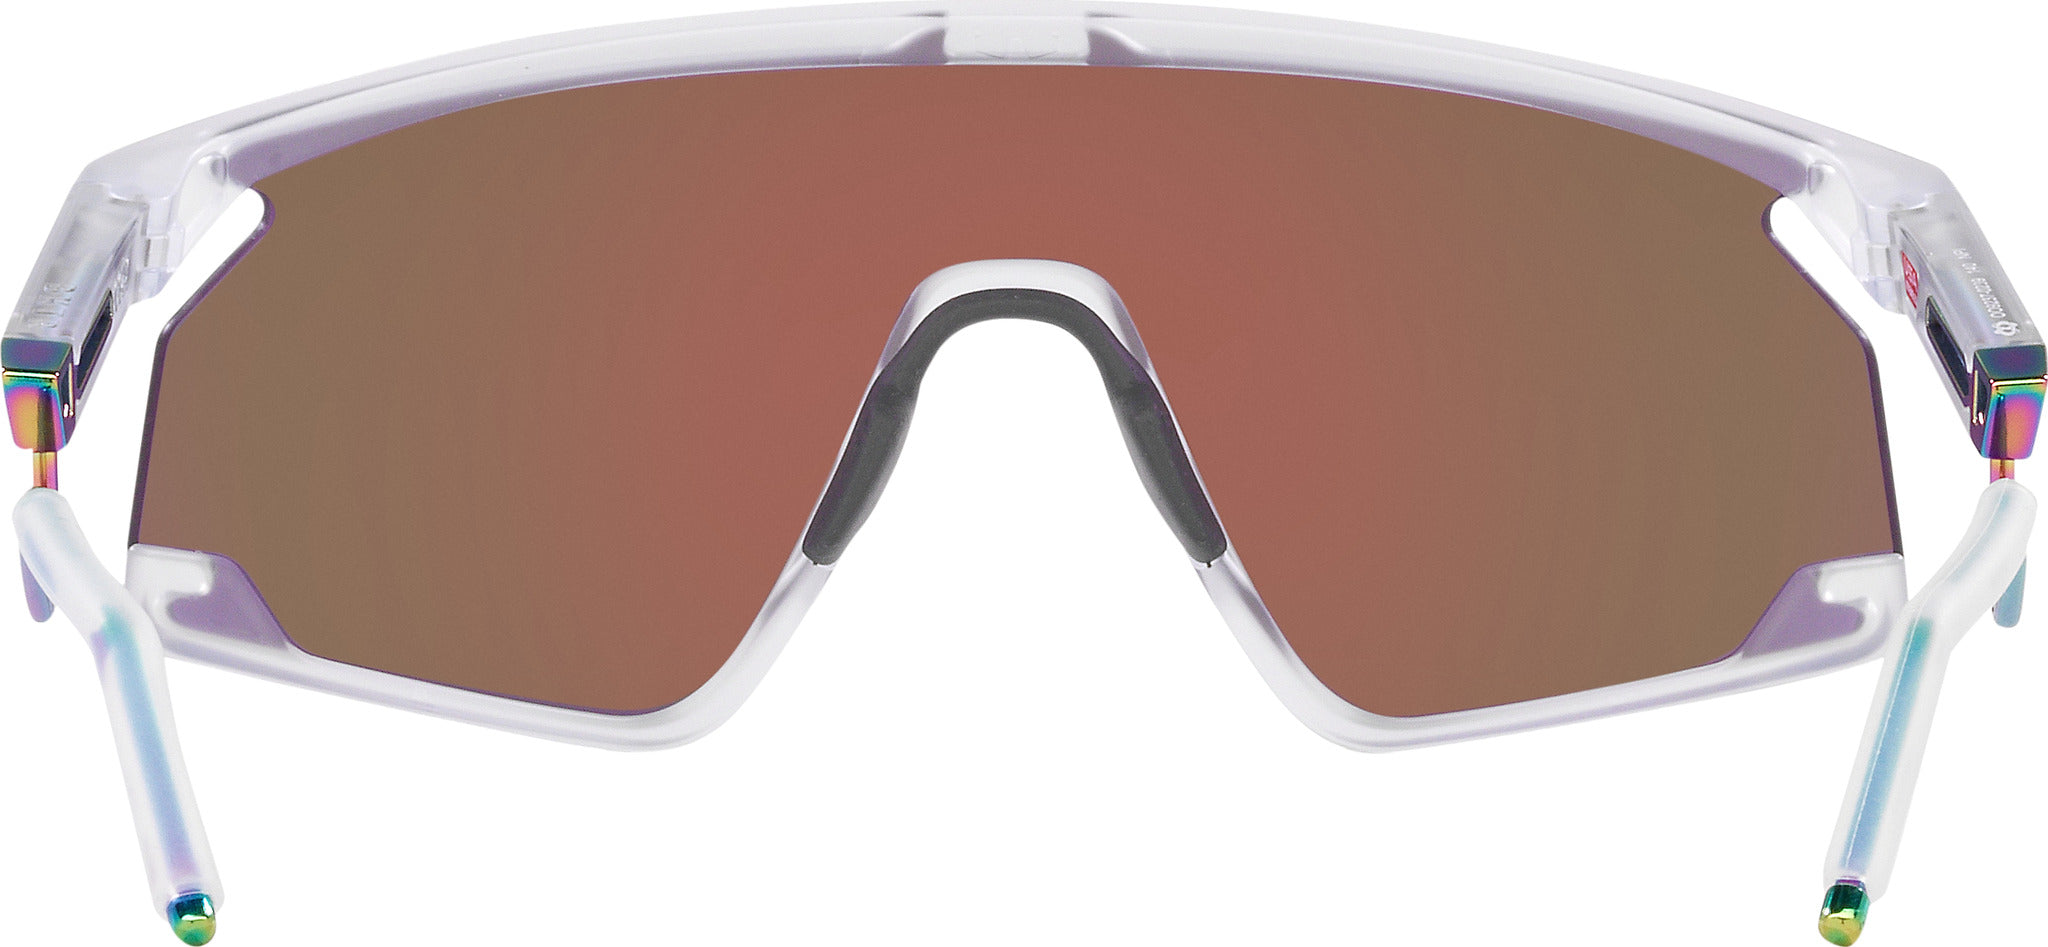 BXTR Metal Prizm Violet Lenses, Matte Clear Frame Sunglasses